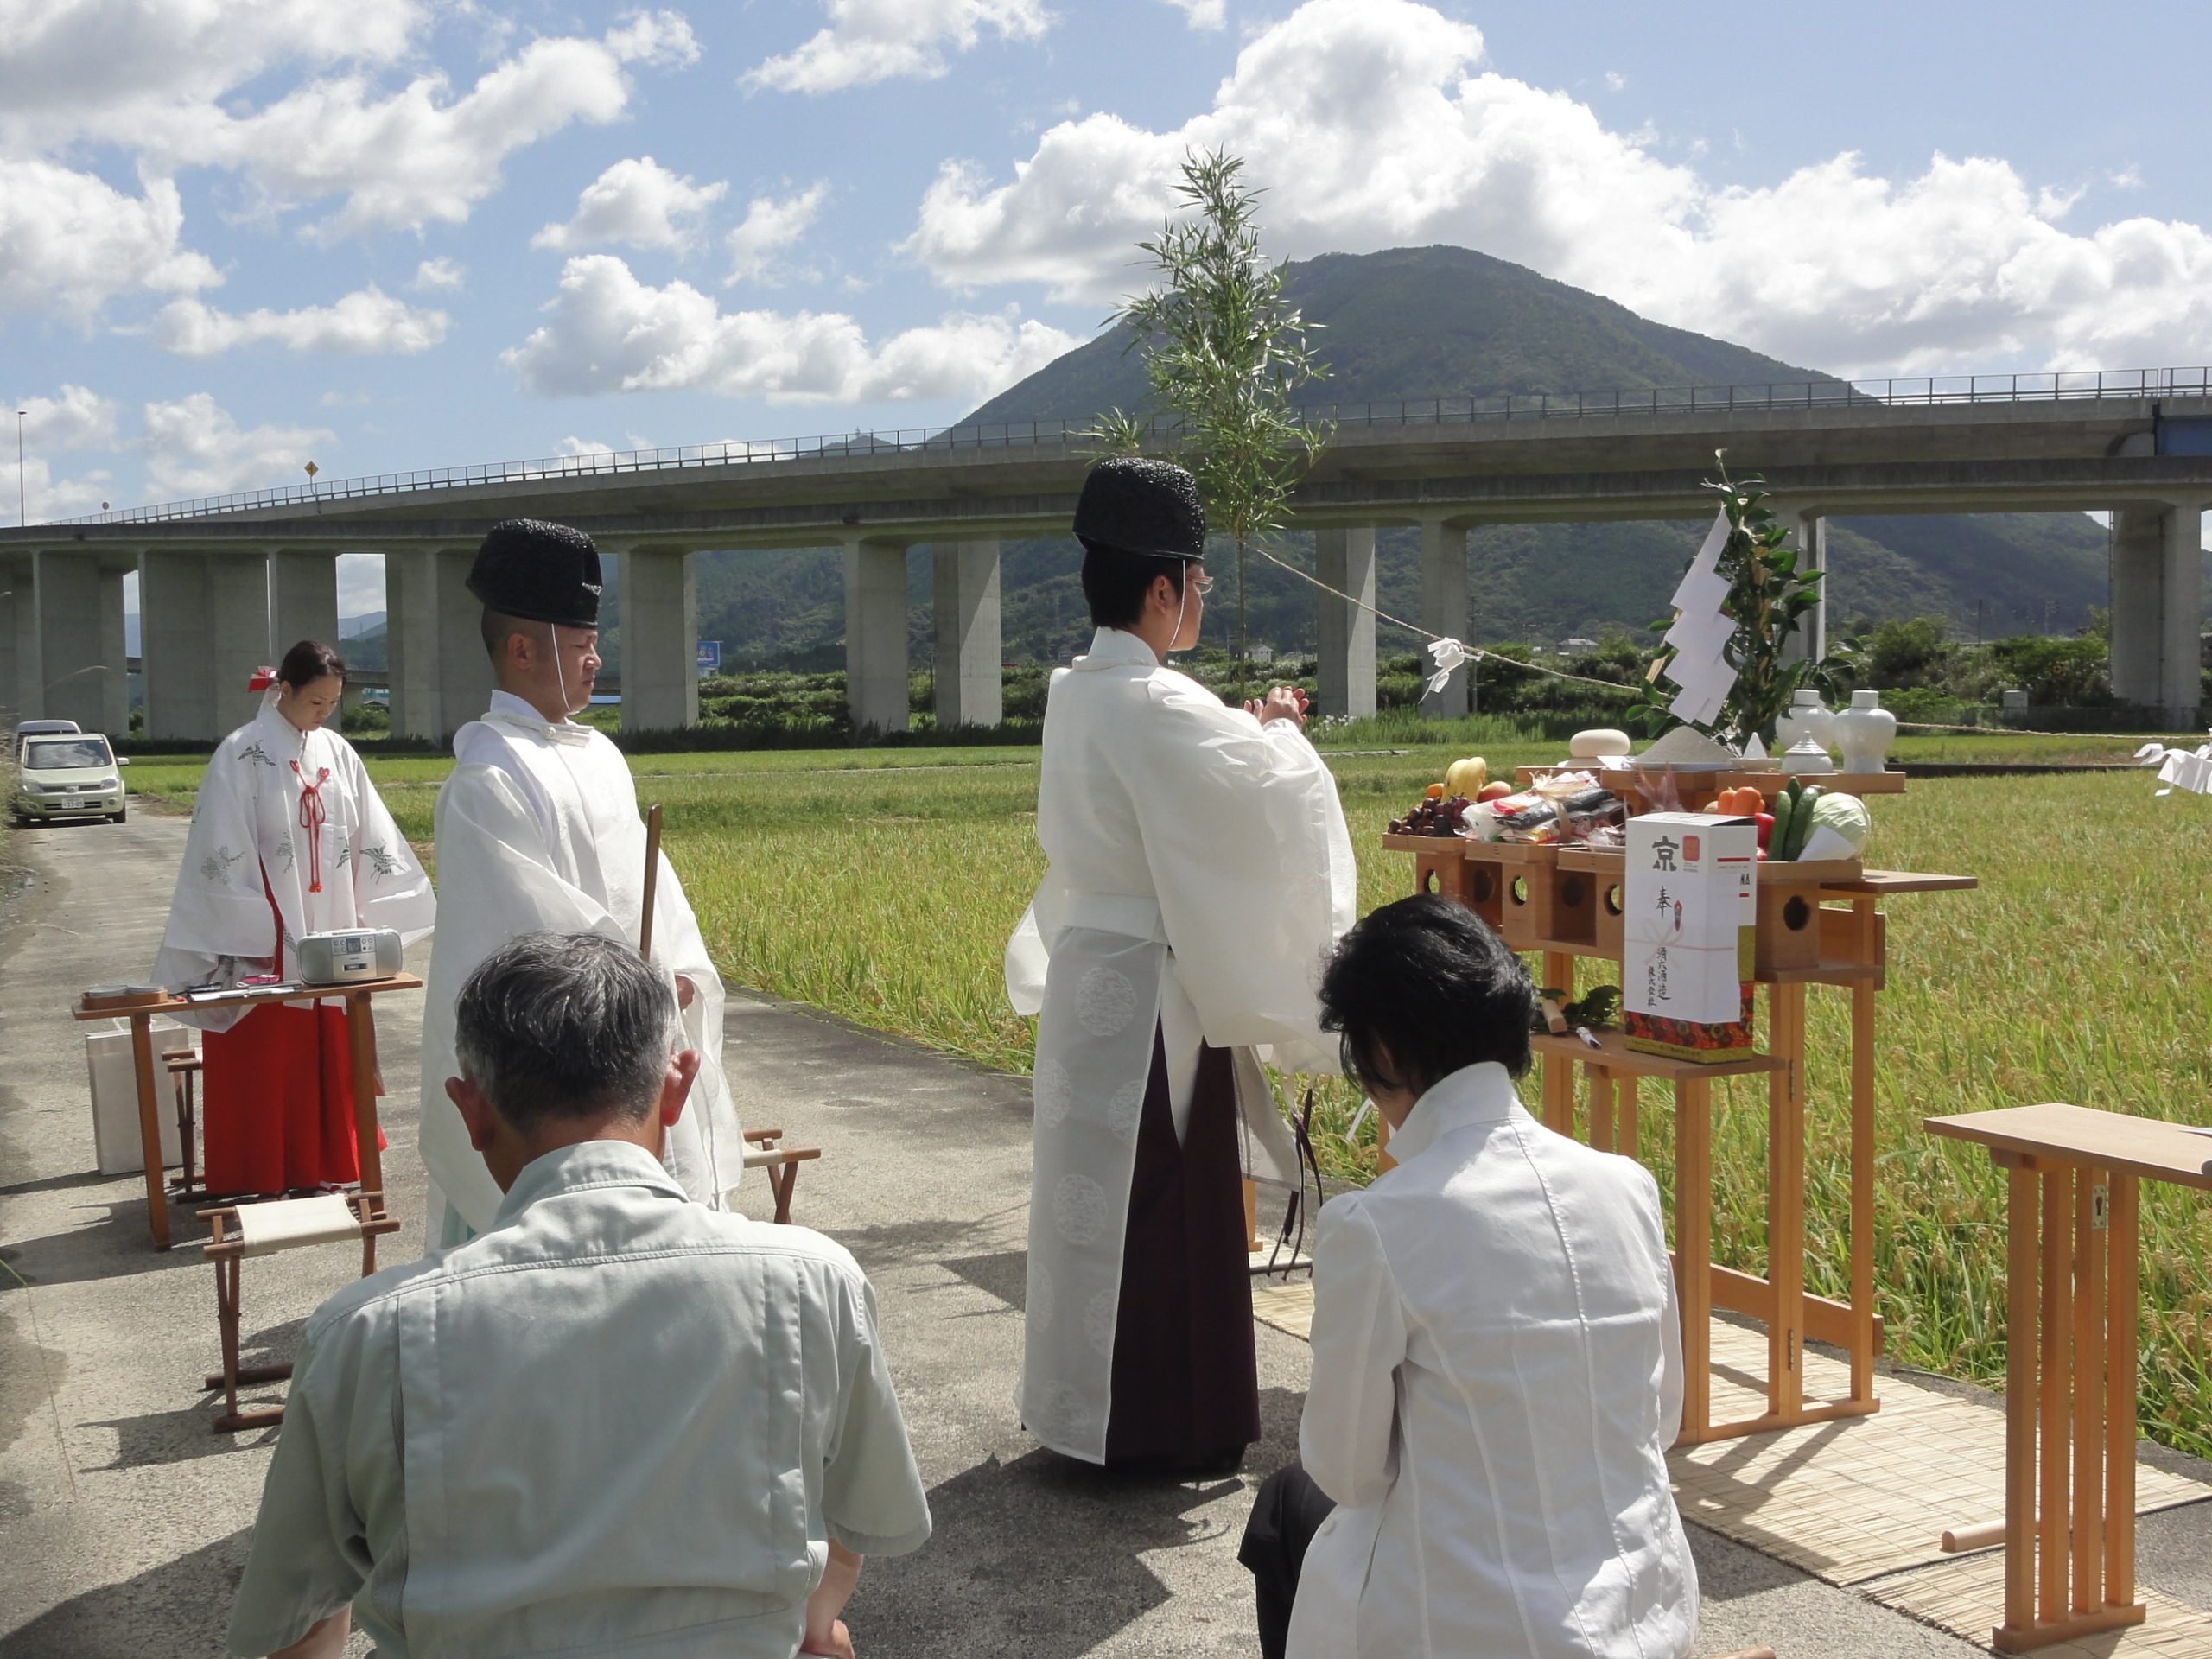 Nuibo-sai(Shinto ritual)